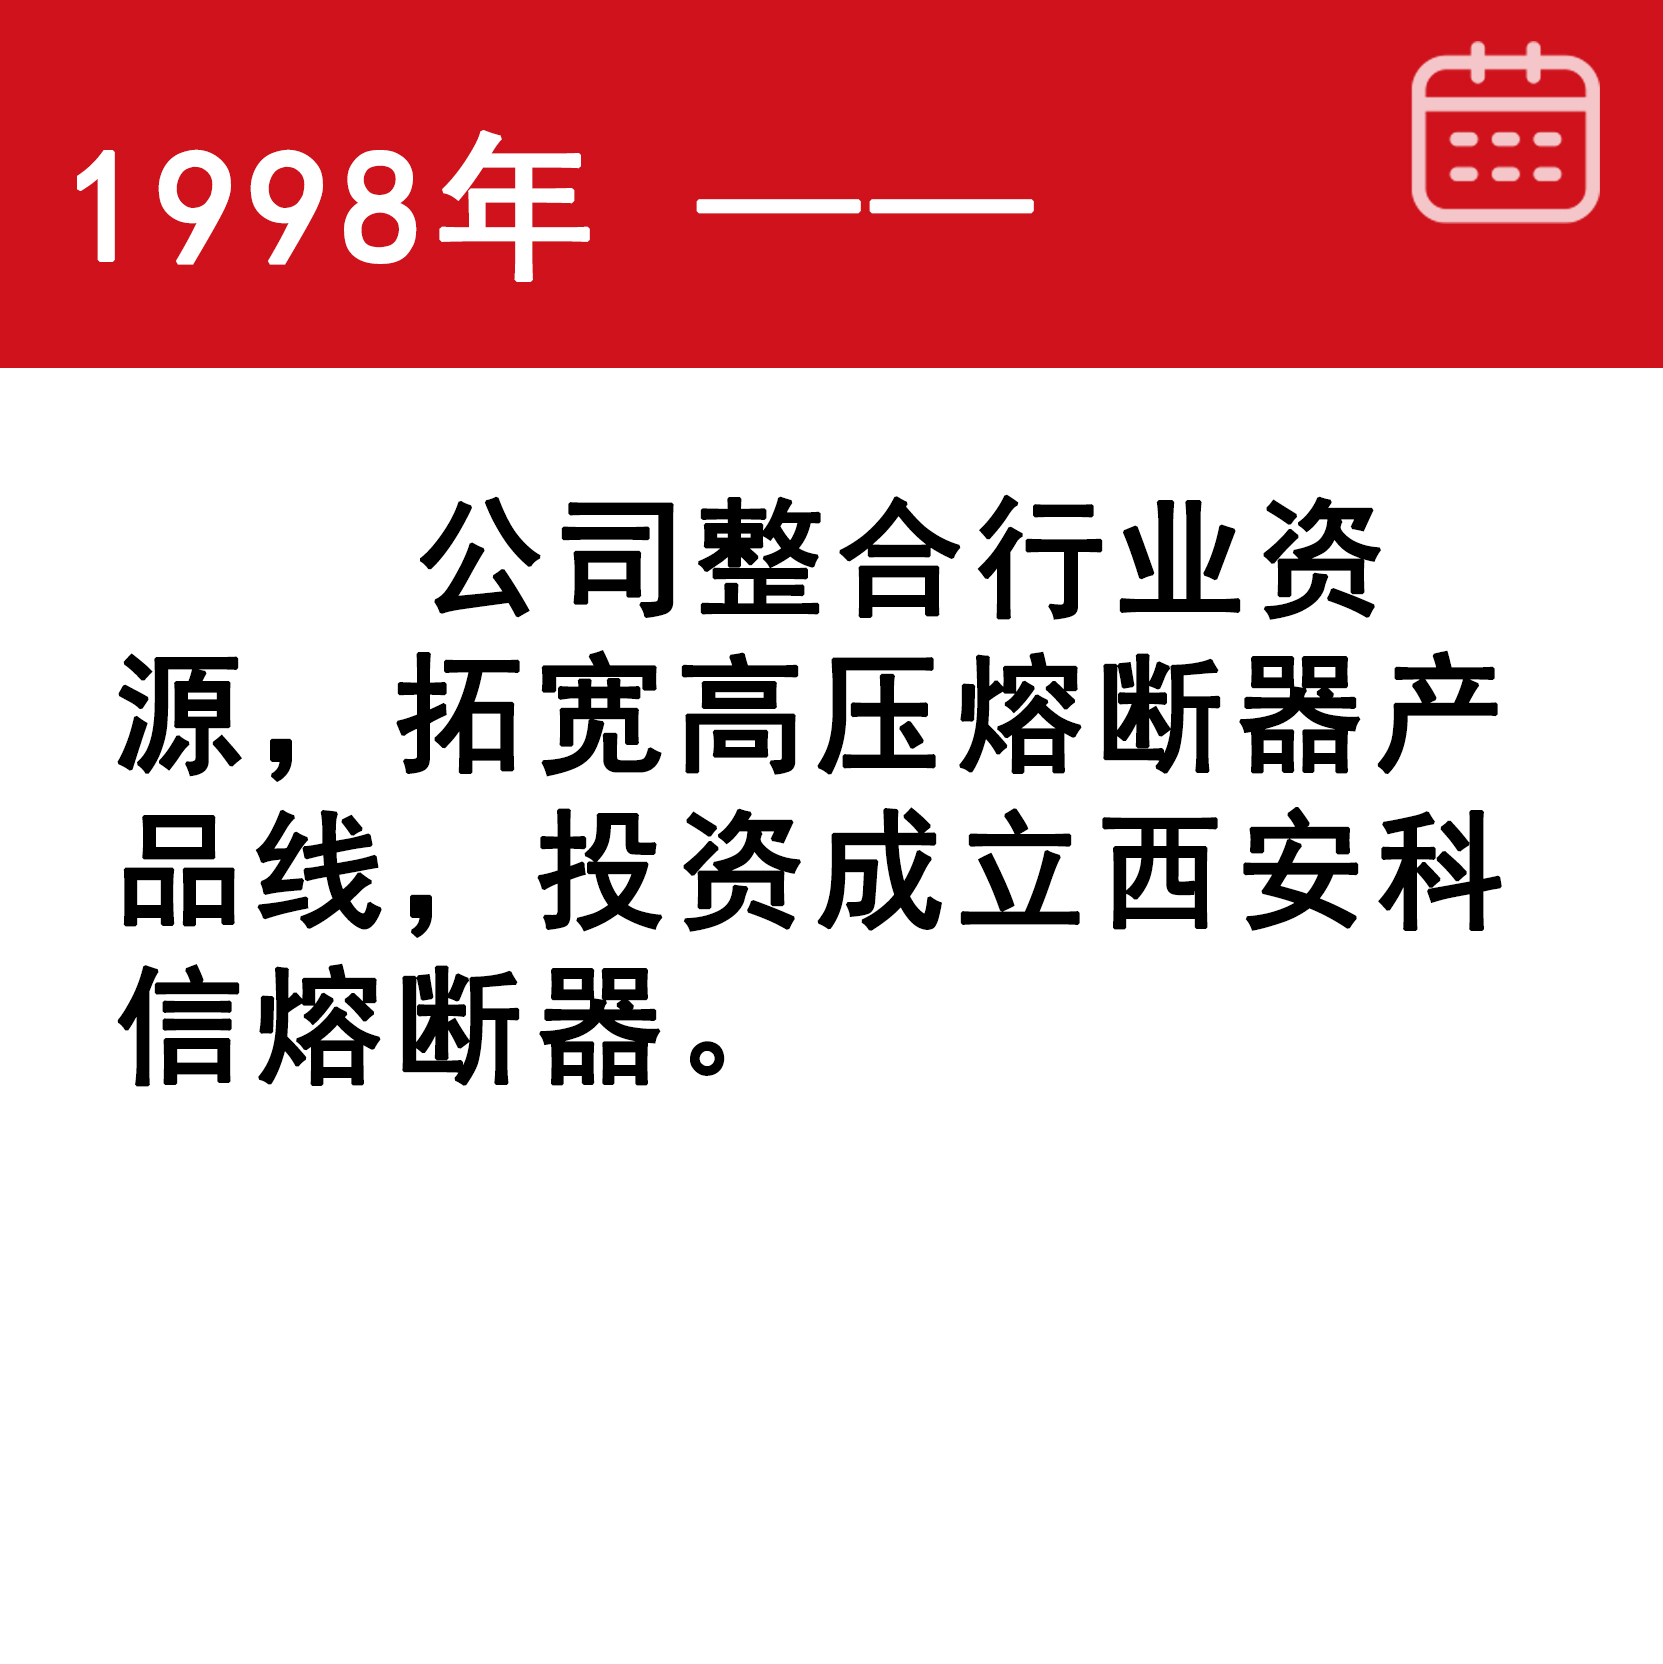 1998-1